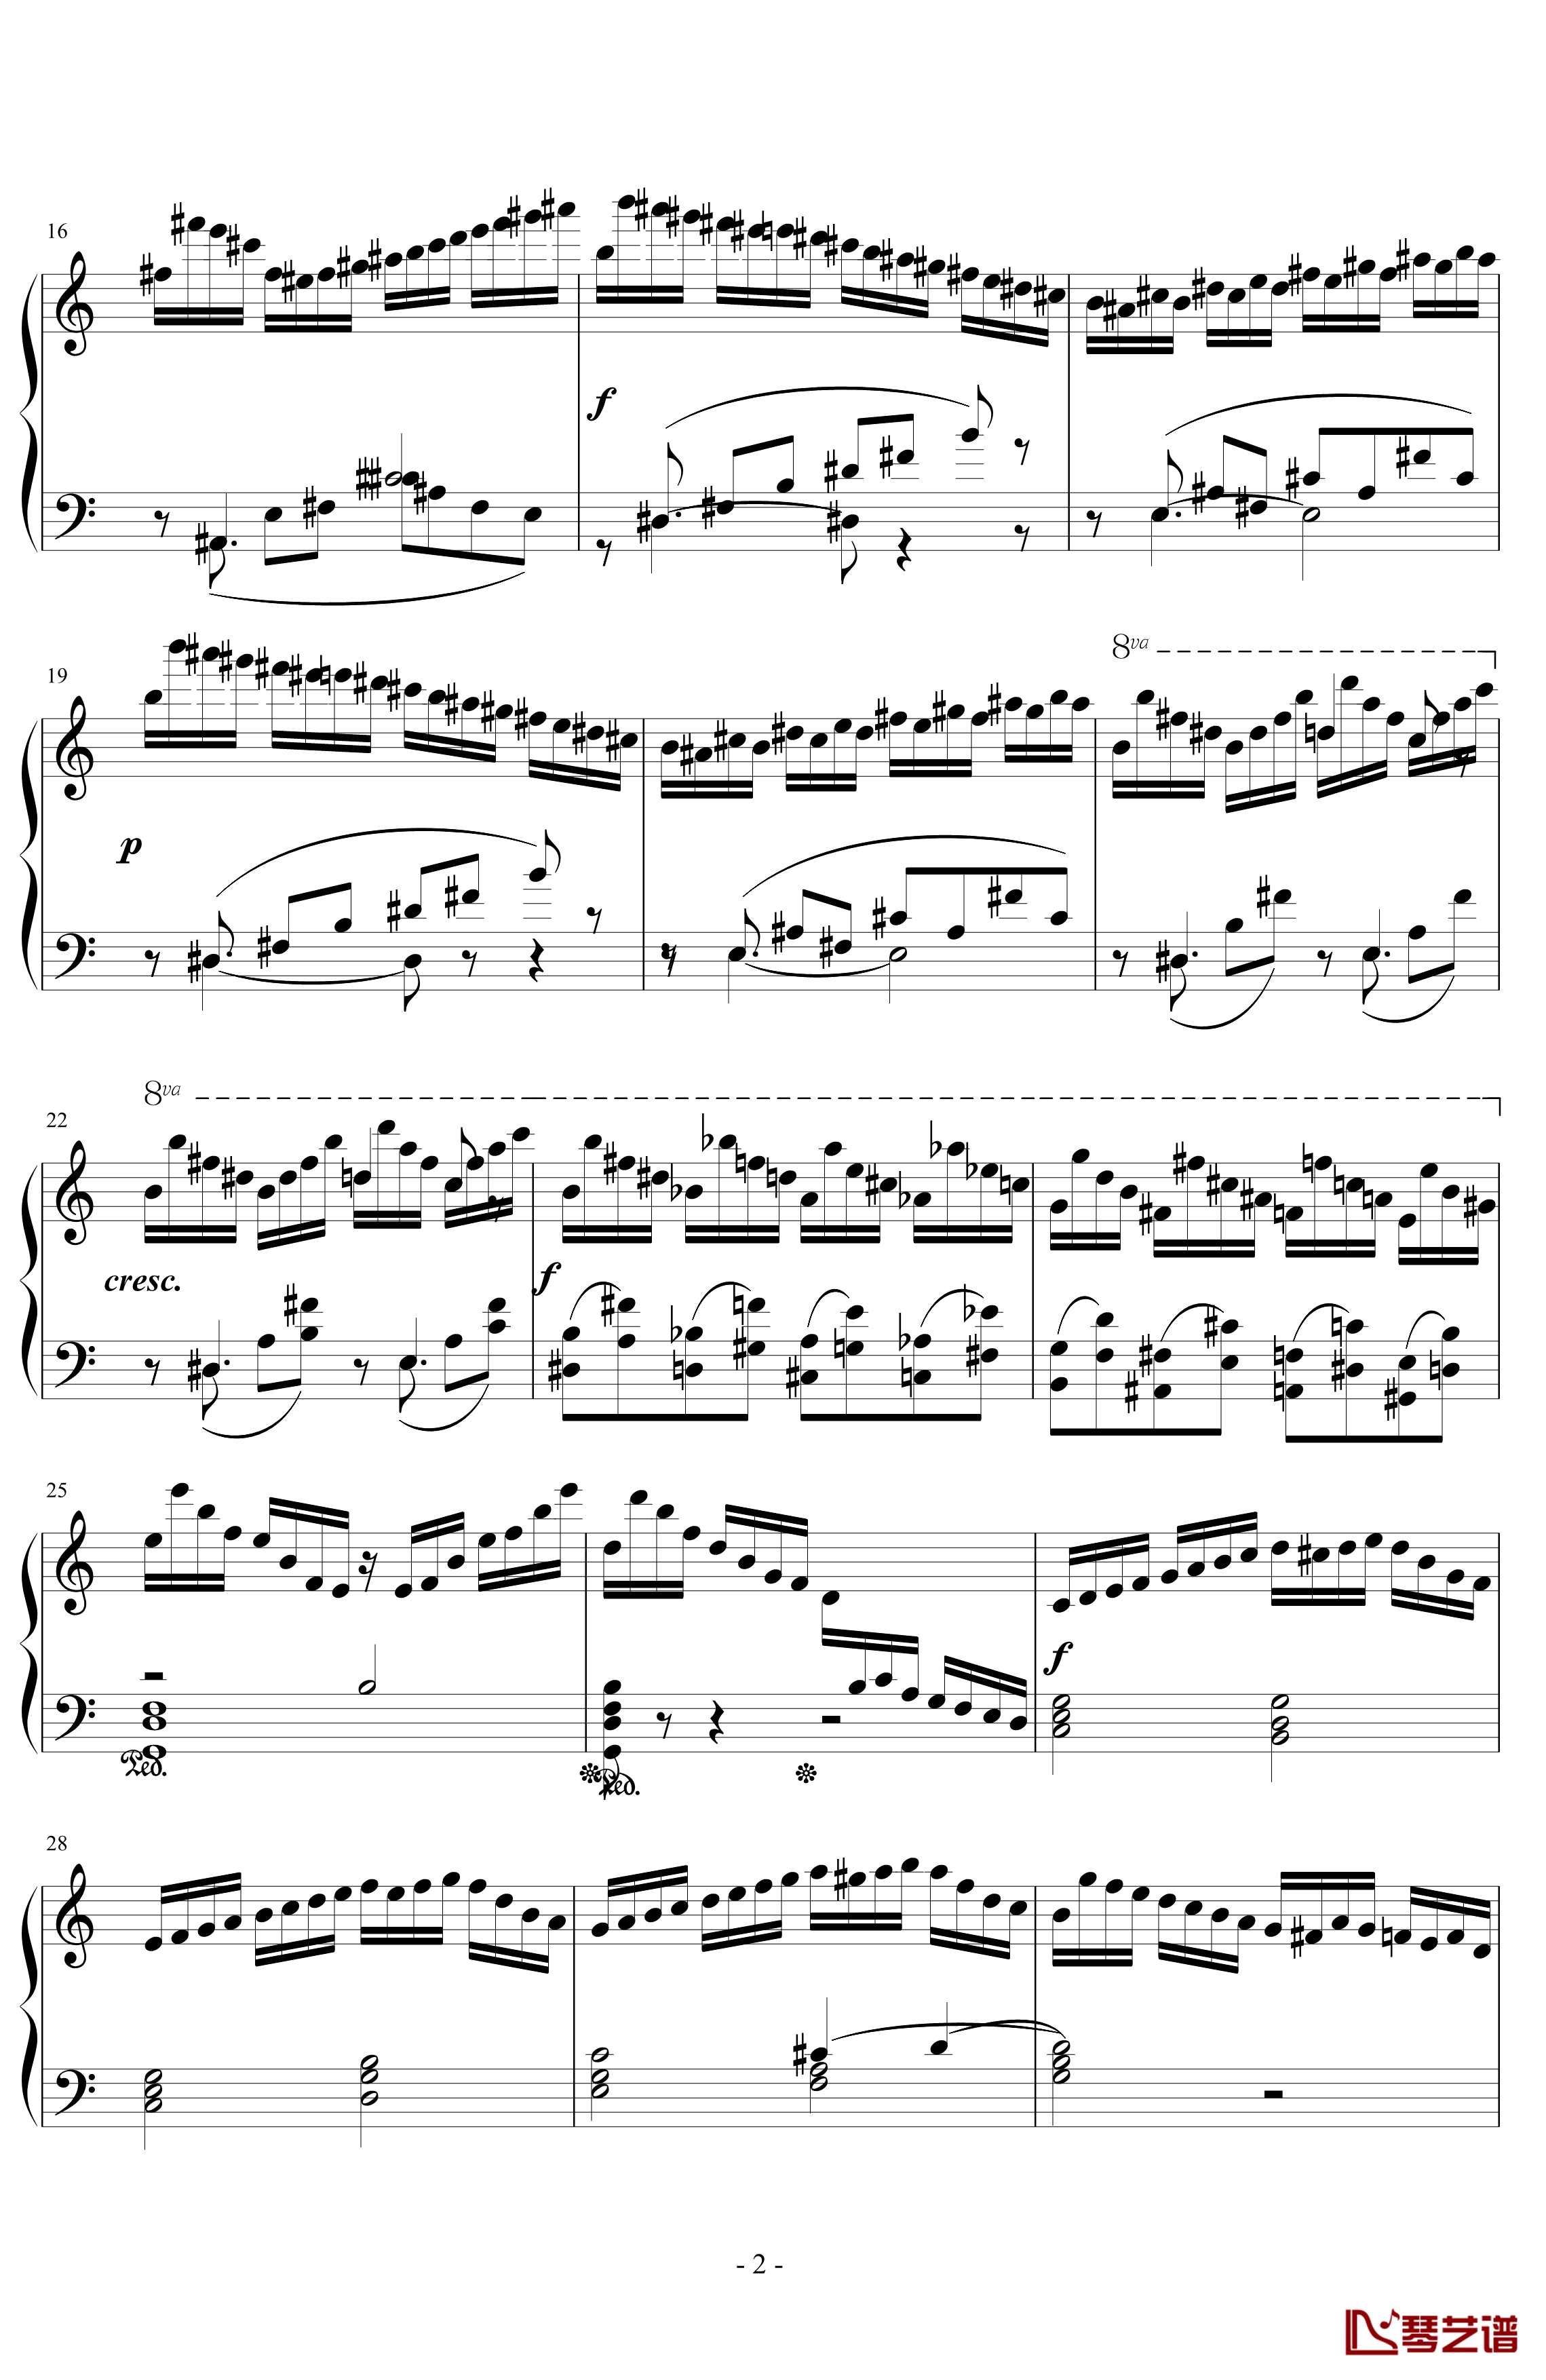 巧技练习曲OP72 NO 5钢琴谱-莫什科夫斯基-Moszkowski2